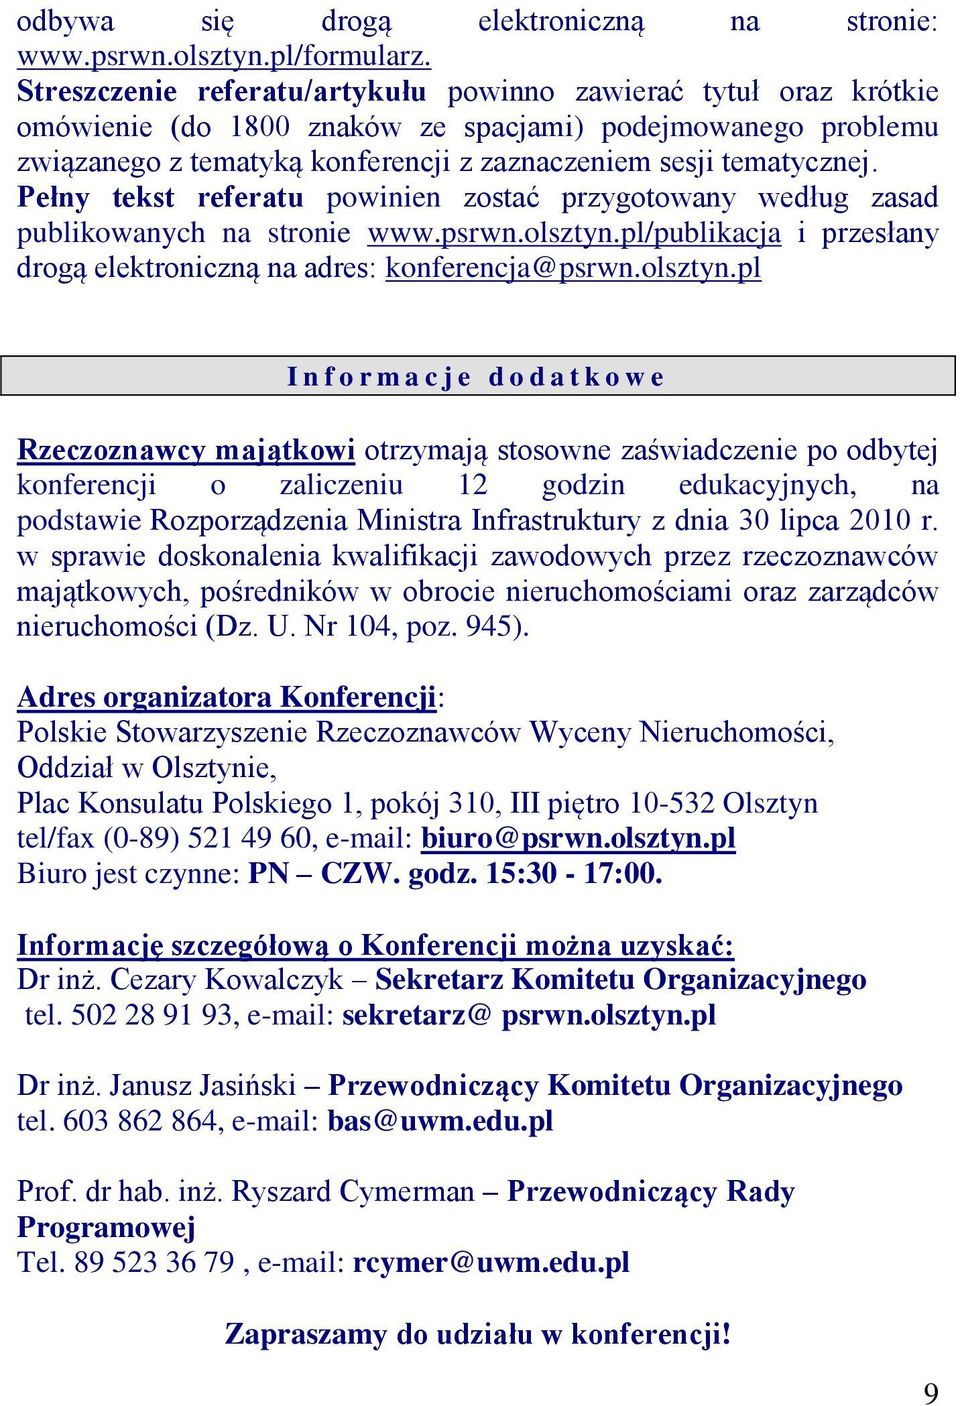 Pełny tekst referatu powinien zostać przygotowany według zasad publikowanych na stronie www.psrwn.olsztyn.